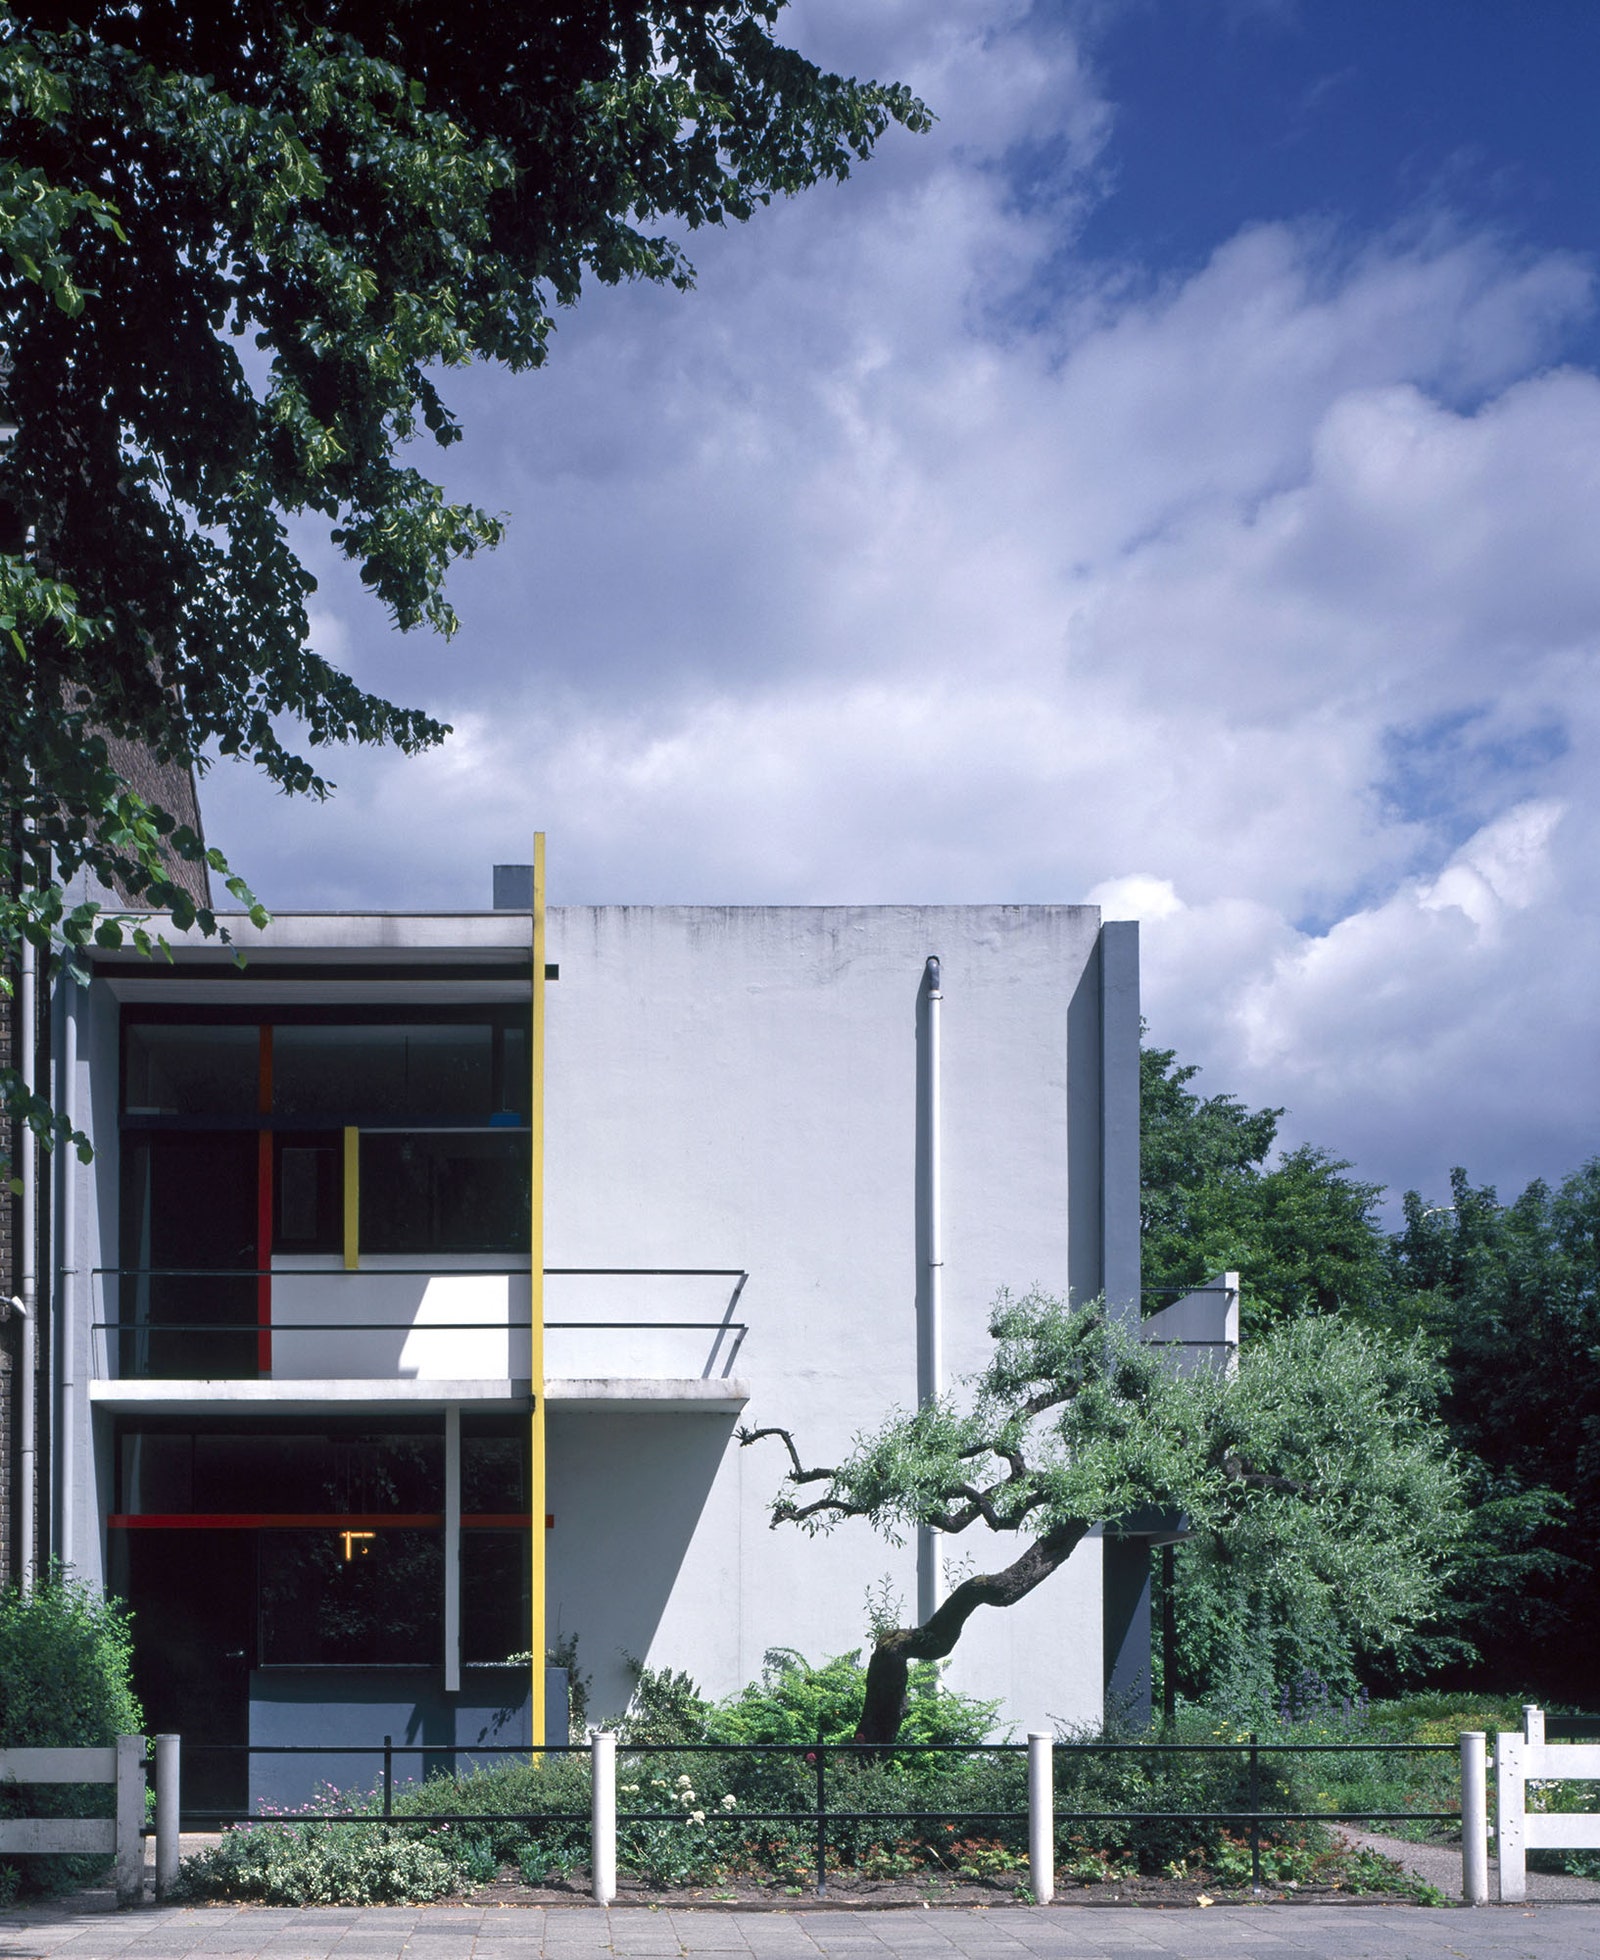 Дом Шрёдер в Утрехте по проекту Геррита Ритвельда.